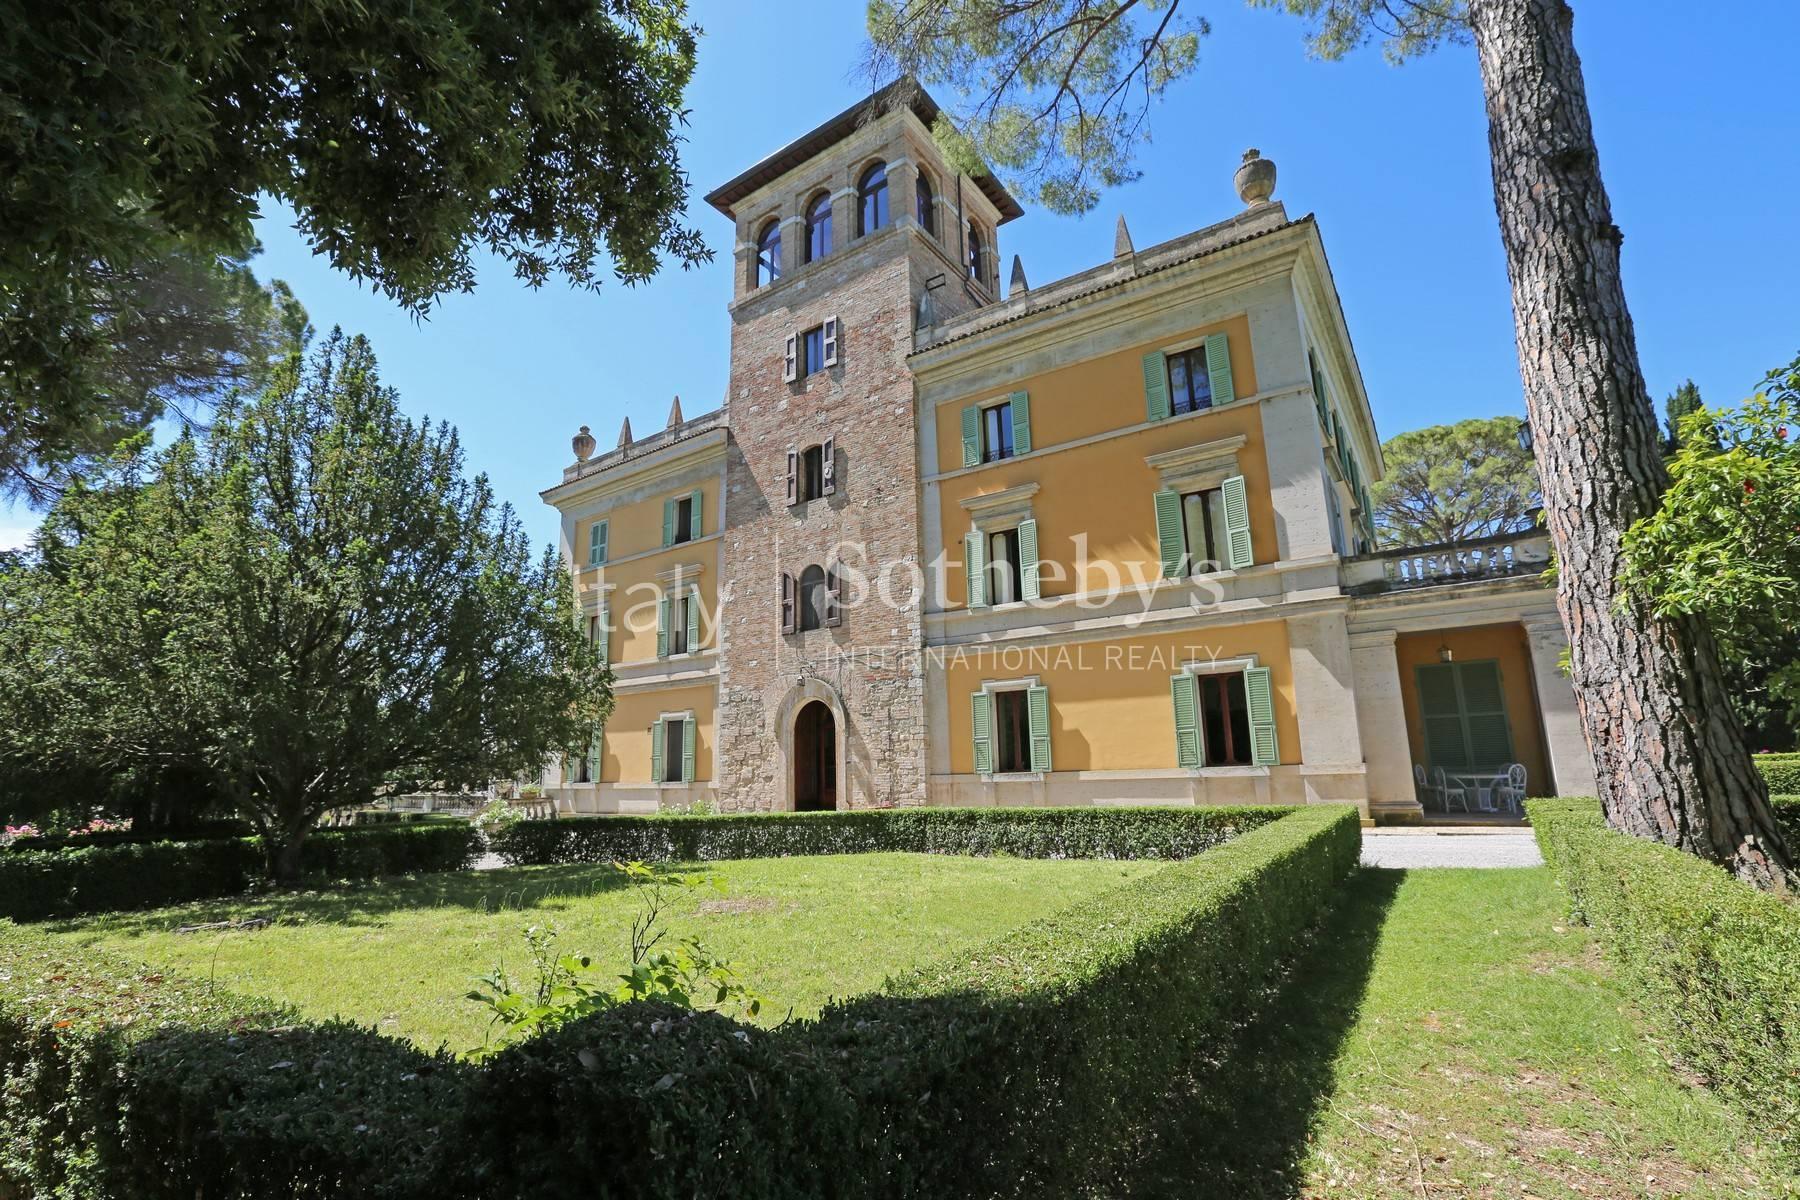 Magnifica Villa storica con giardino all' italiana in Umbria - 3